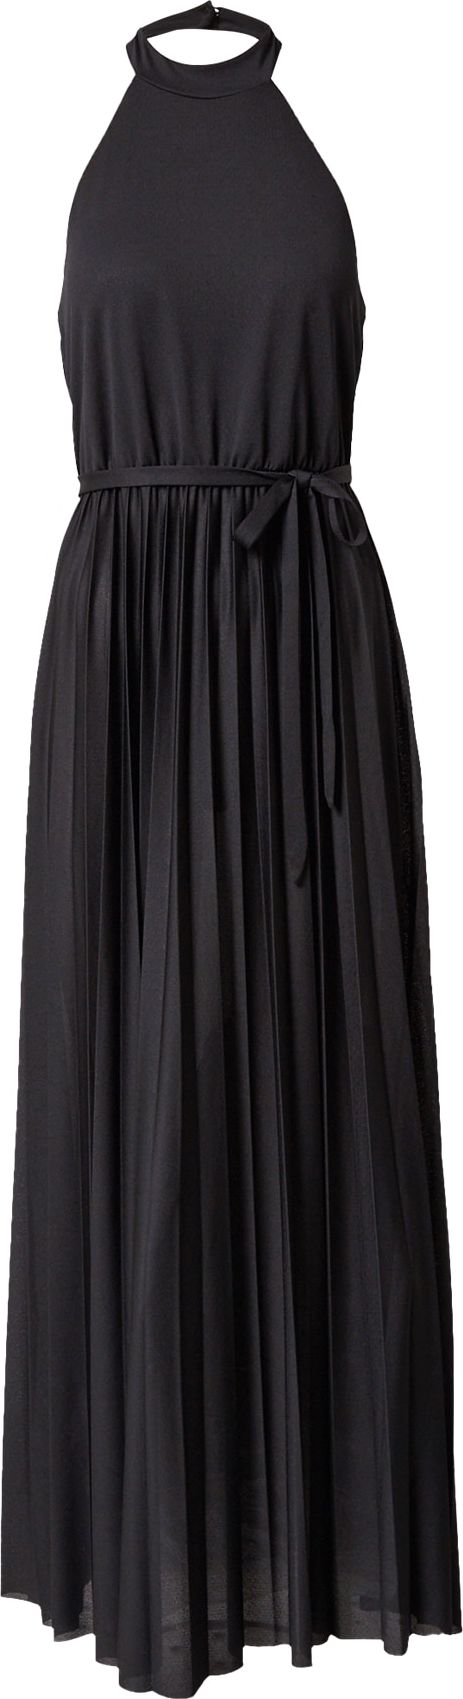 ABOUT YOU Společenské šaty 'Elna' černá